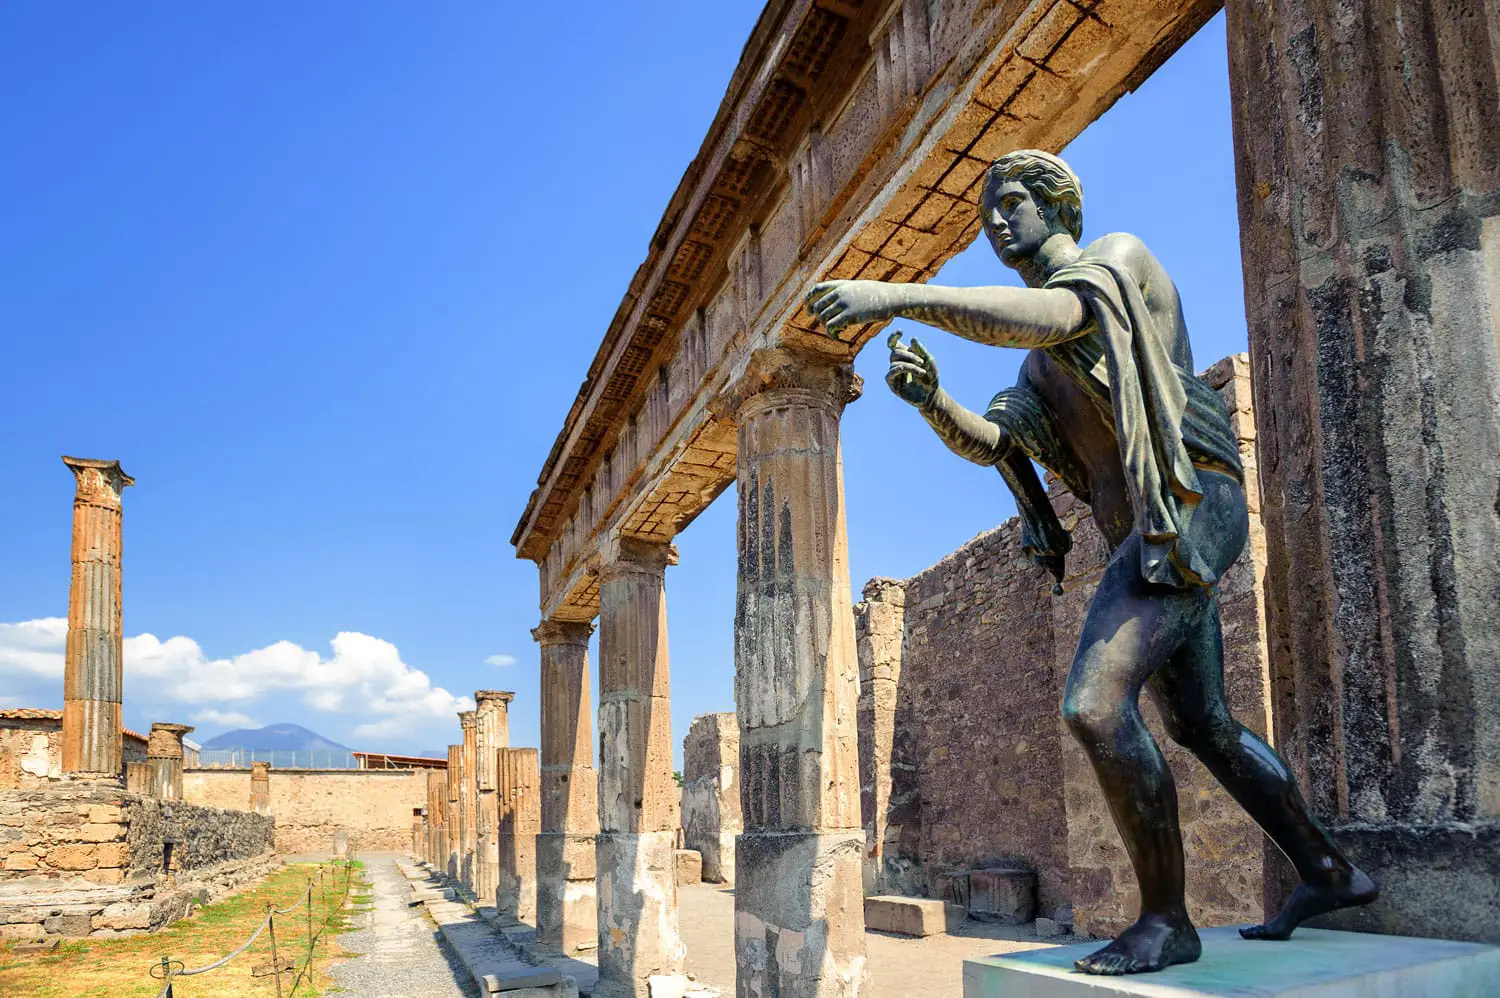 Ερείπια του παλαιού ναού του Απόλλωνα με το χάλκινο άγαλμα του Απόλλωνα στην Πομπηία, Νάπολη, Ιταλία